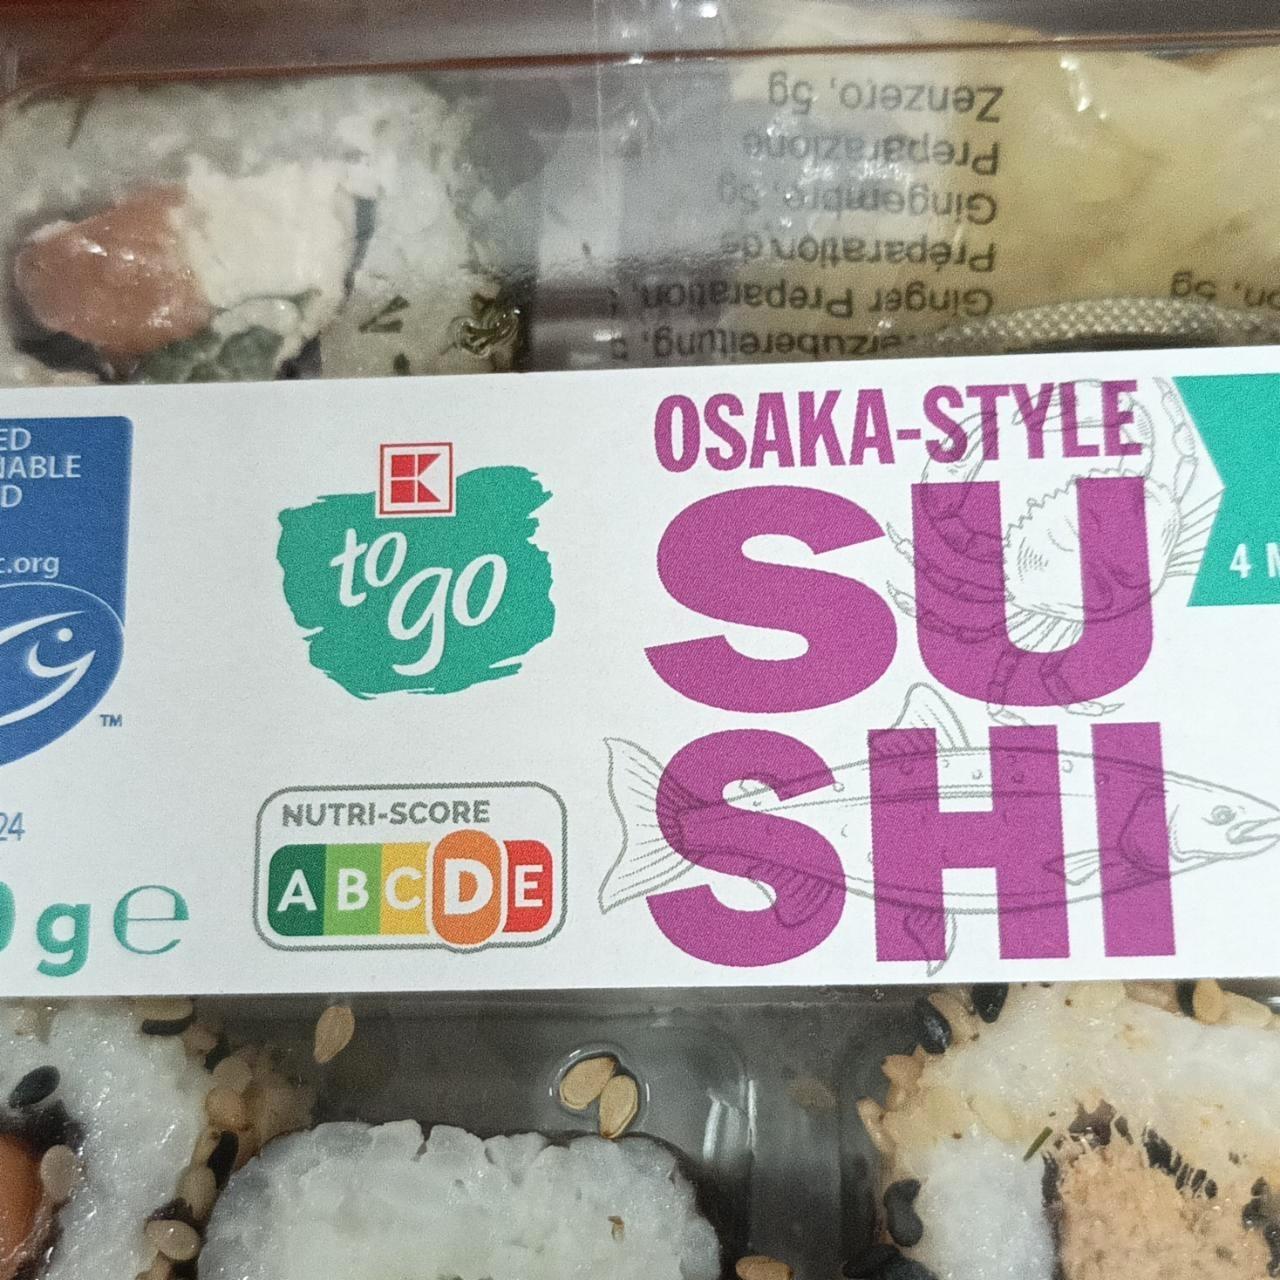 Képek - Osaka style sushi K to go